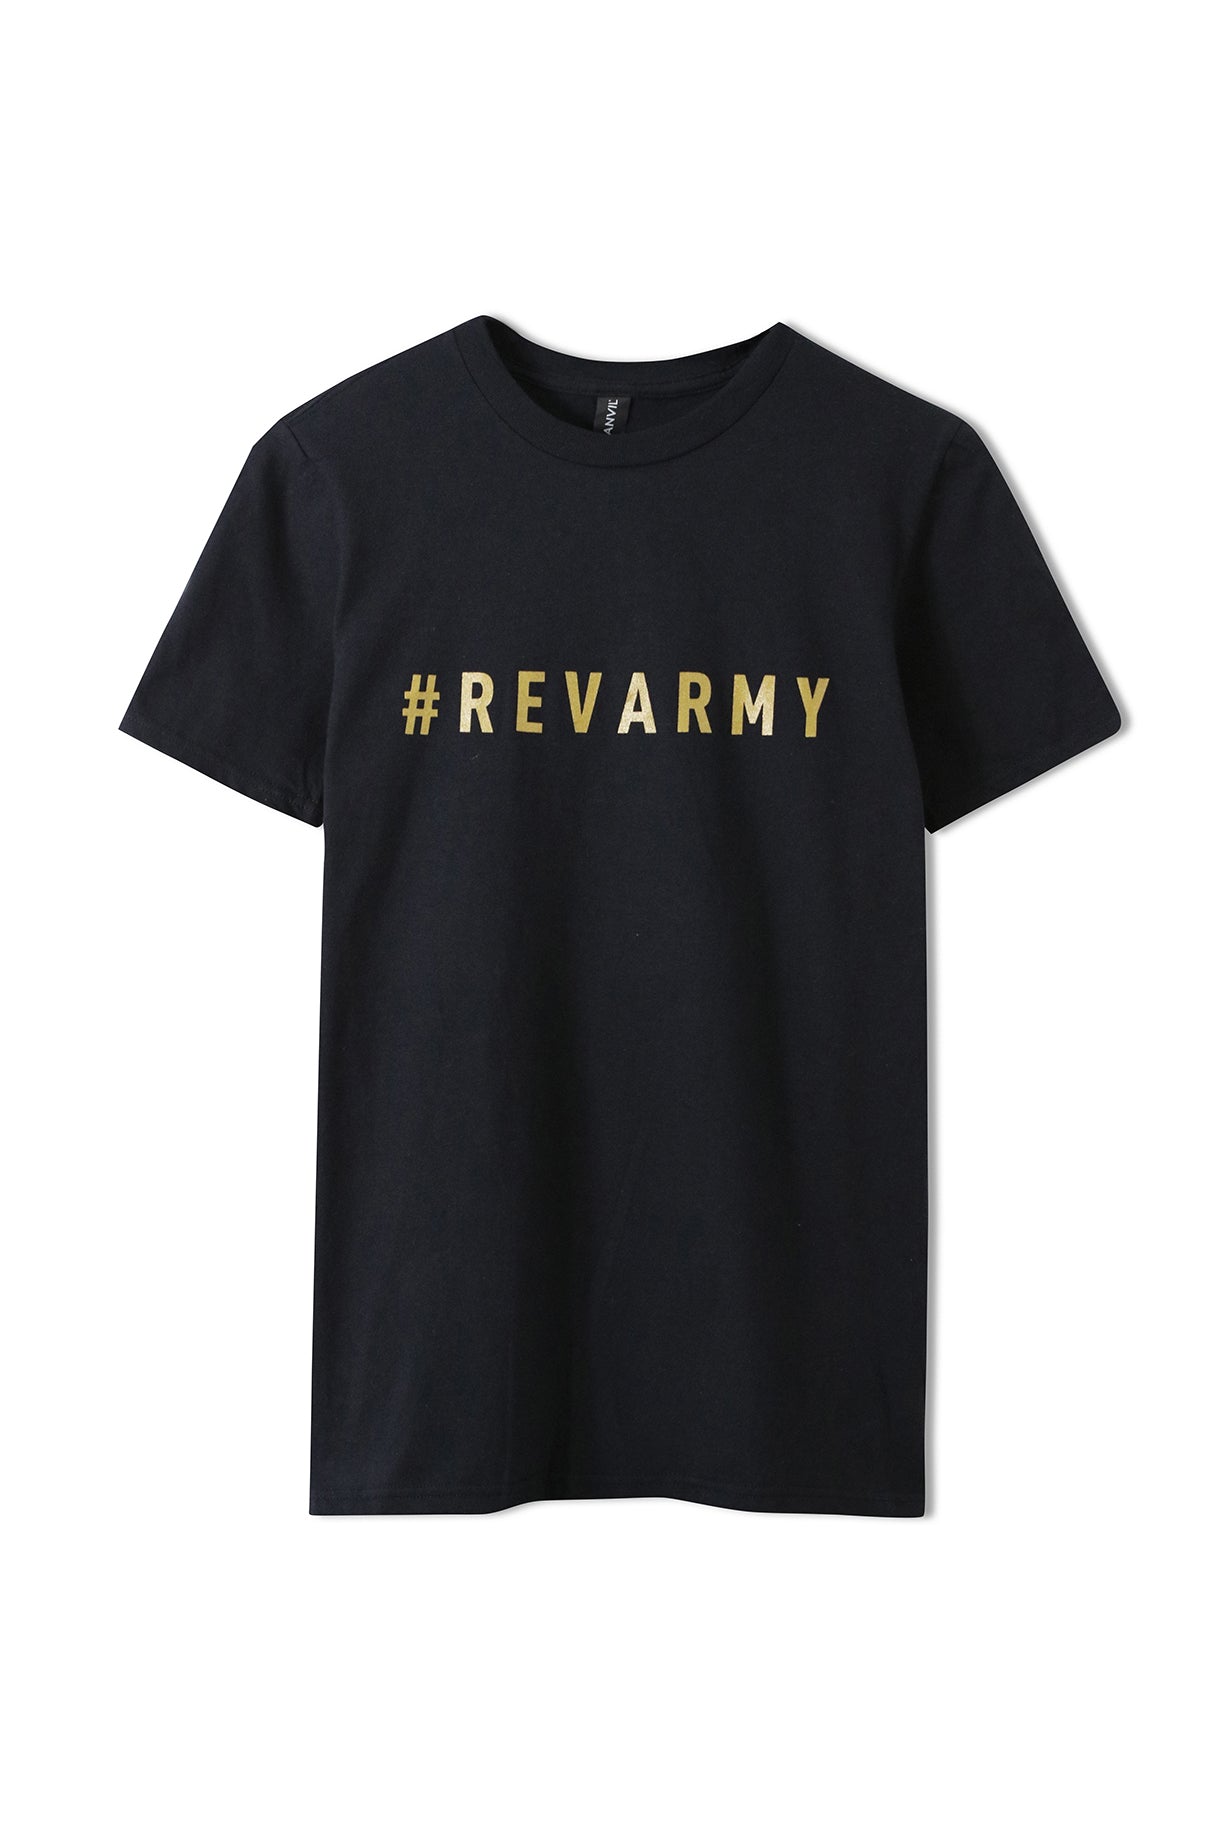 Rev Army